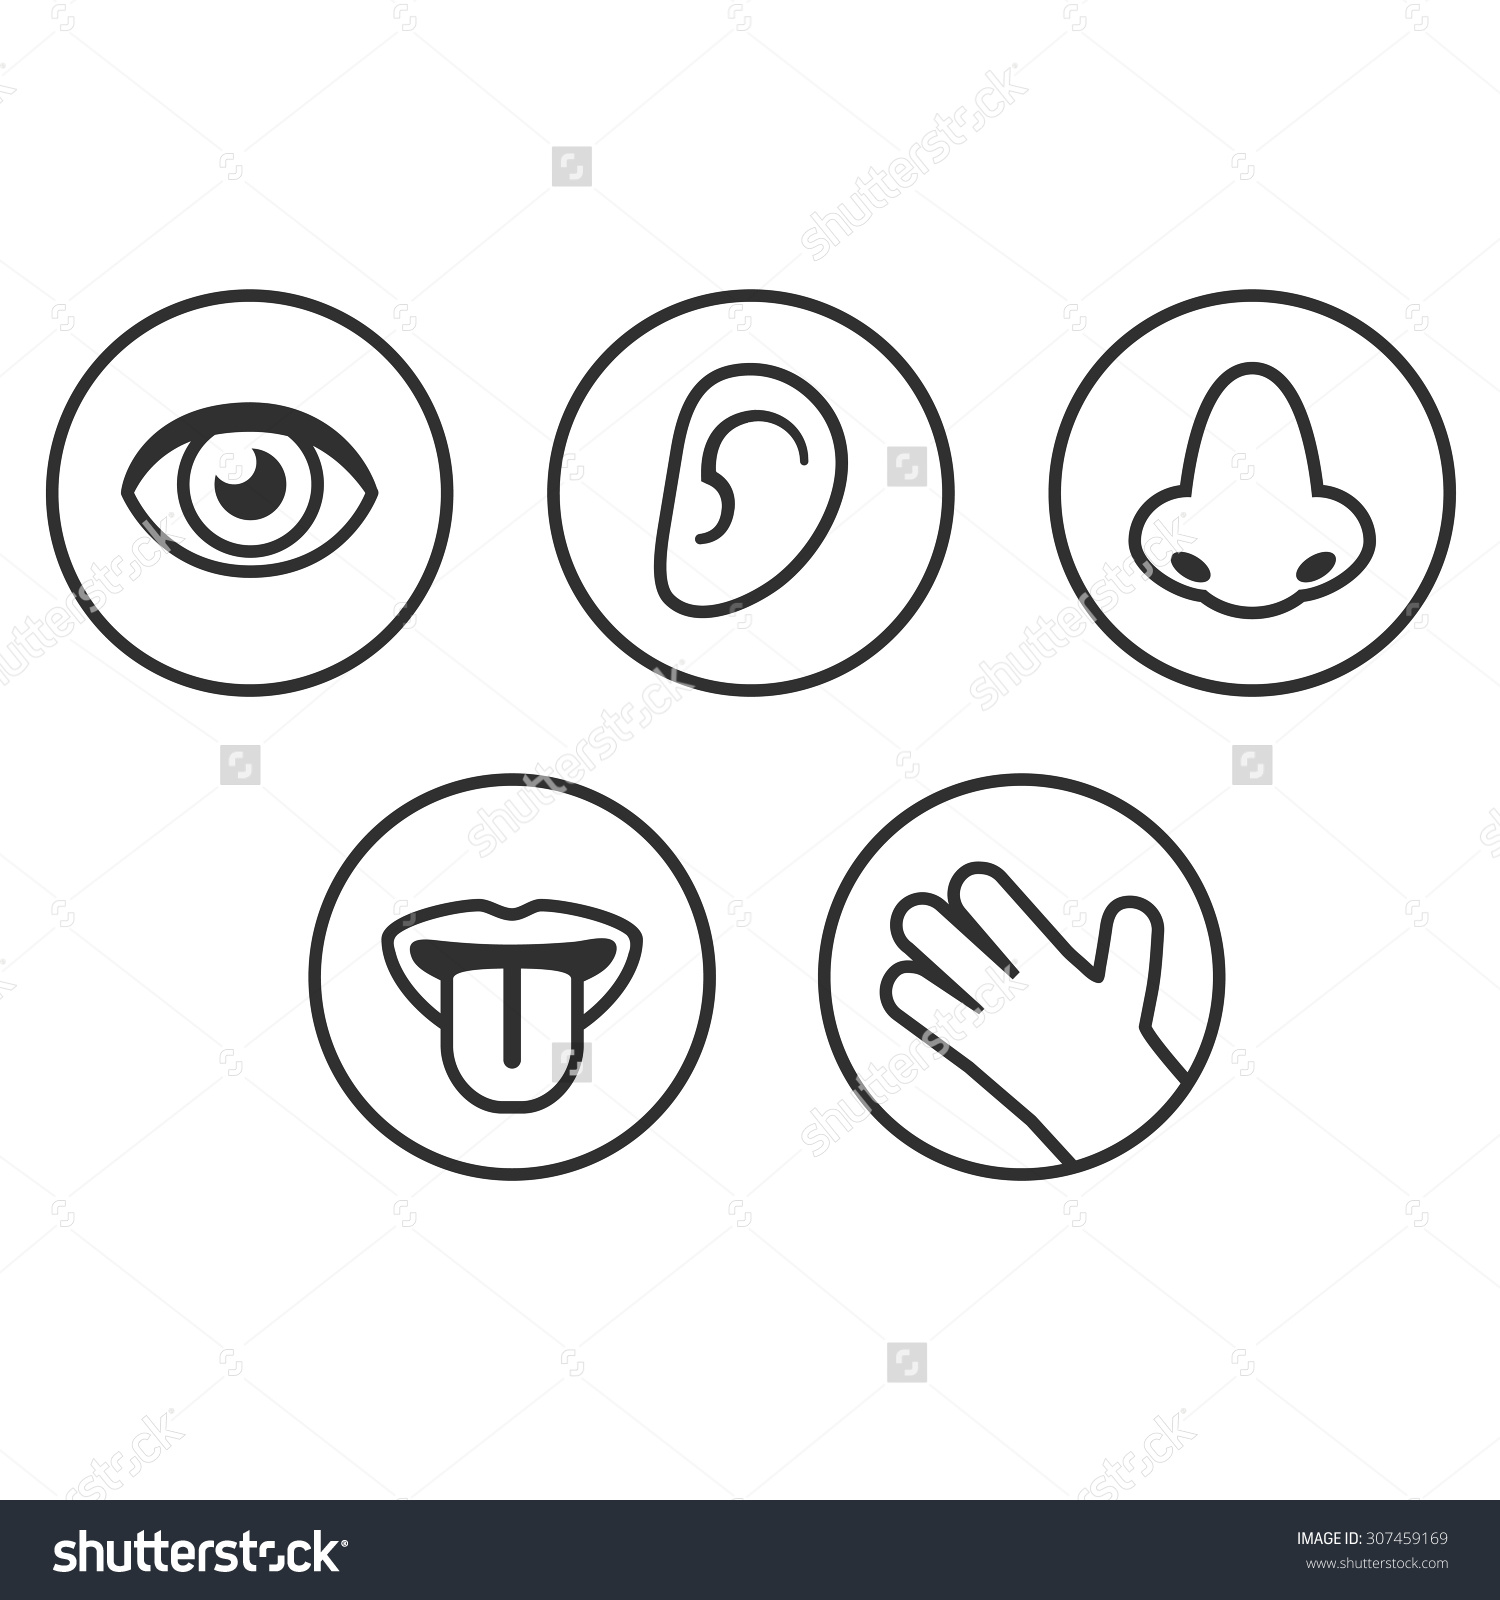  five clip art. 5 senses clipart symbol